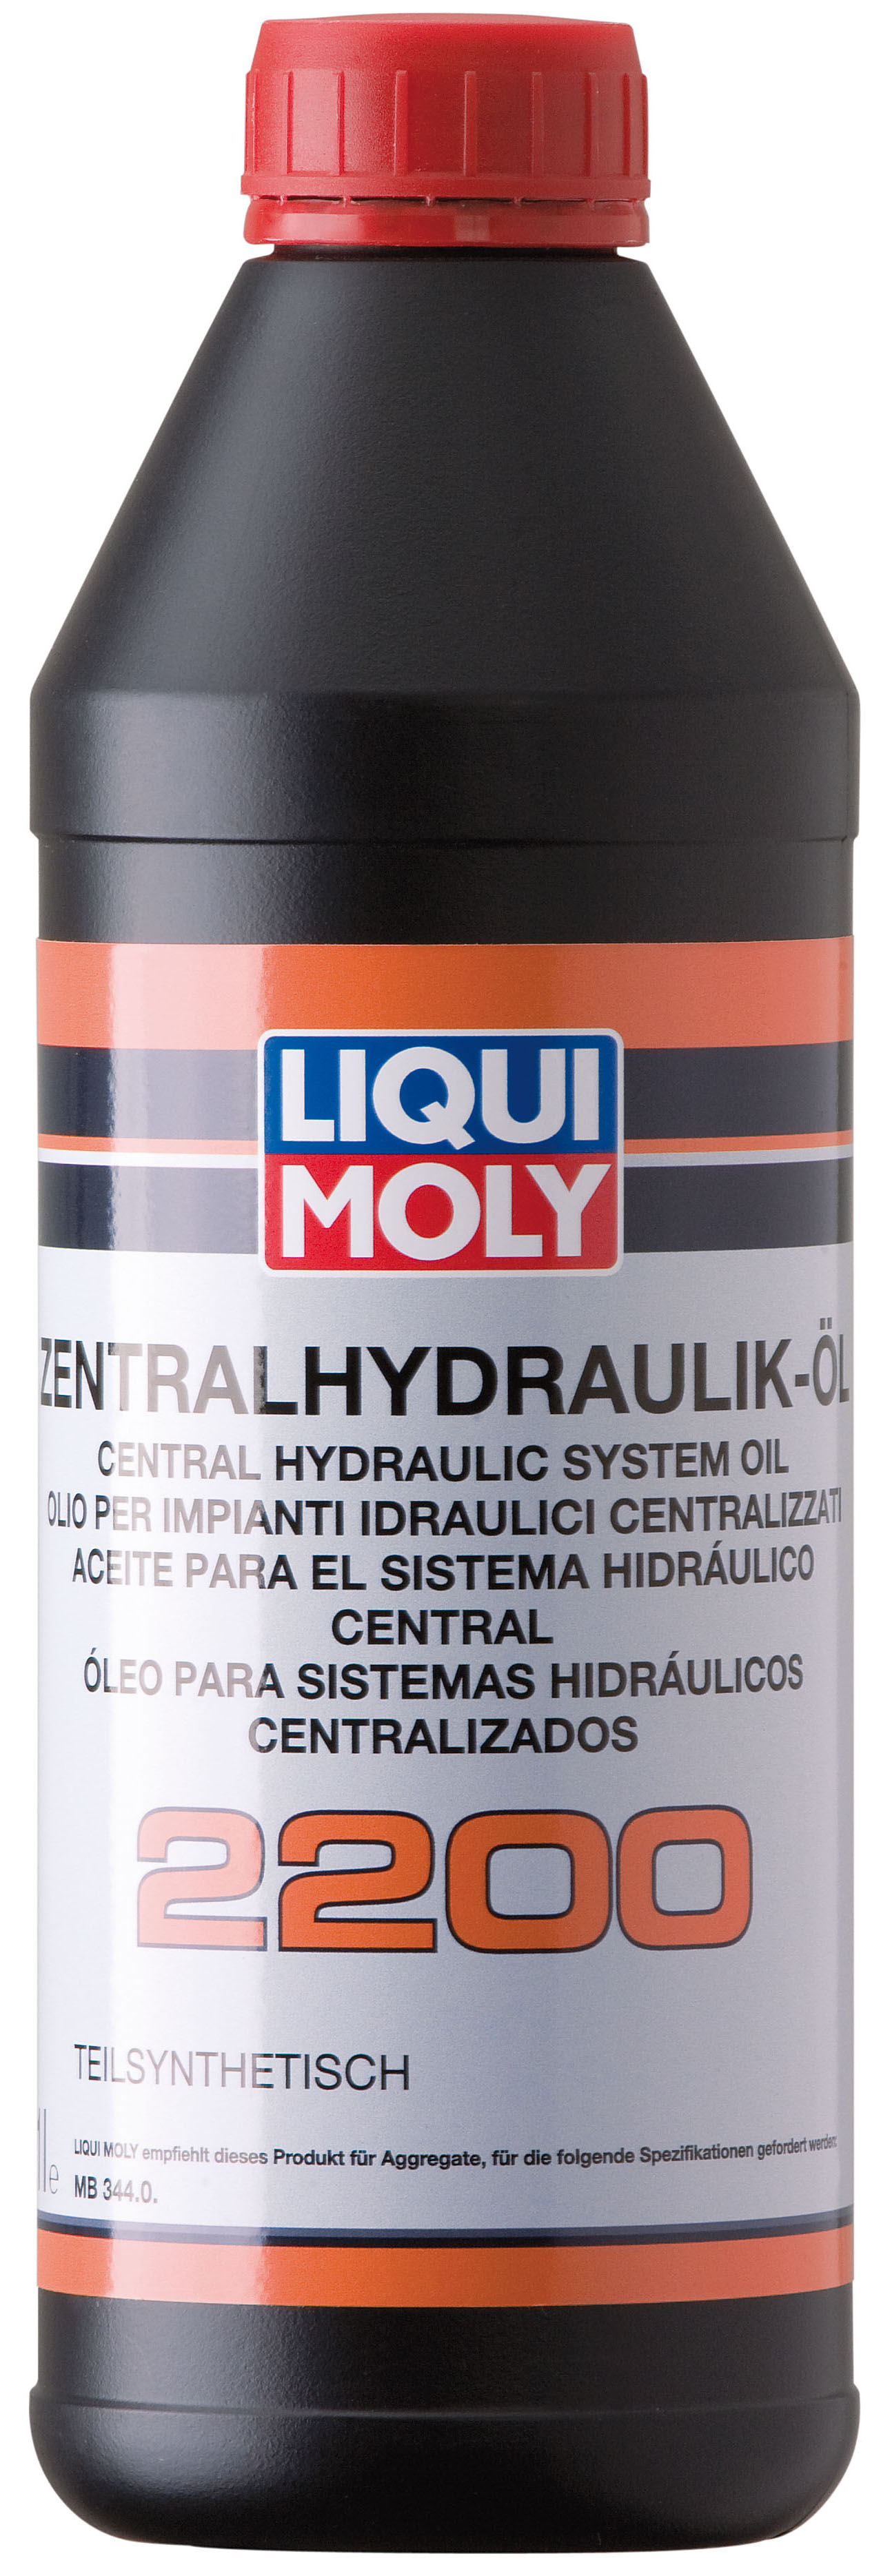 Полусинтетическая гидравлическая жидкость Zentralhydraulik-Oil 2200